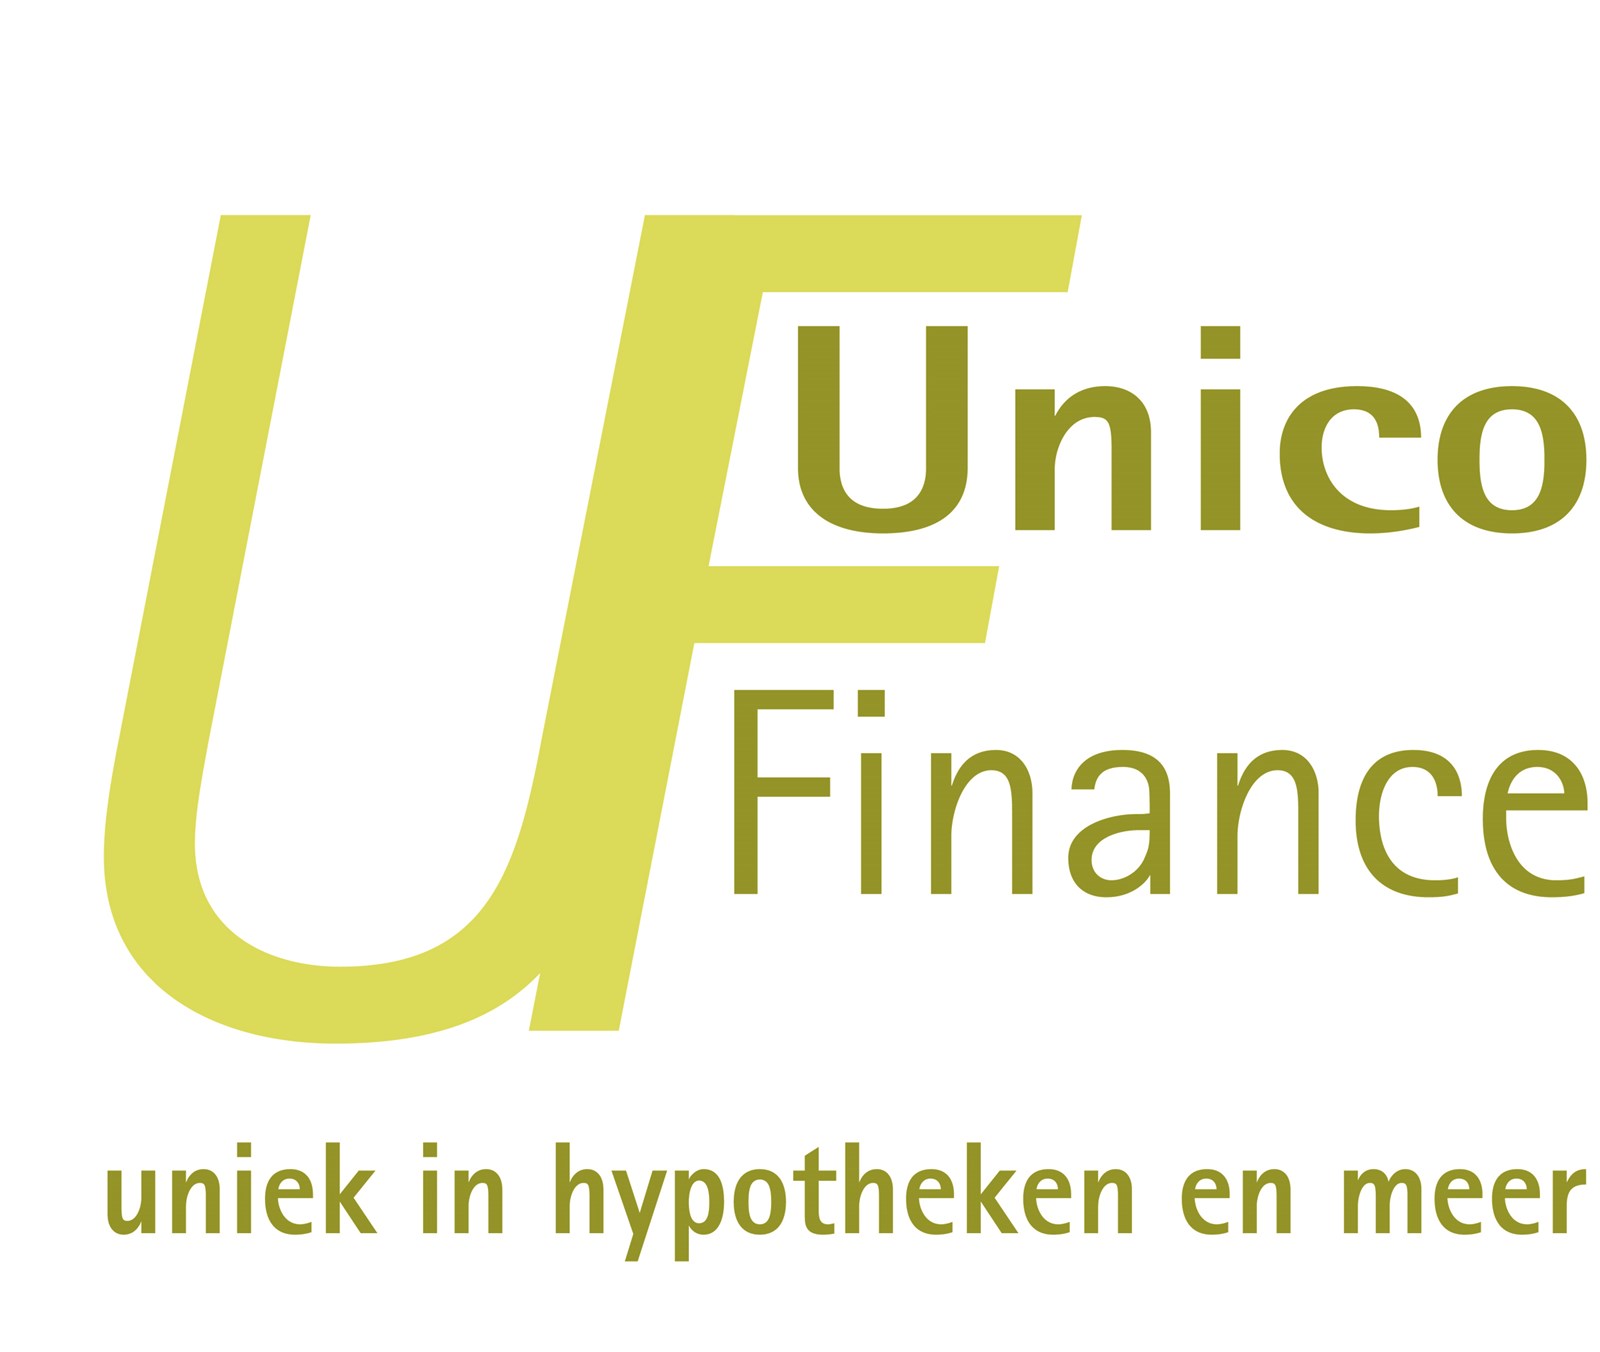 Afbeelding van Unico Finance